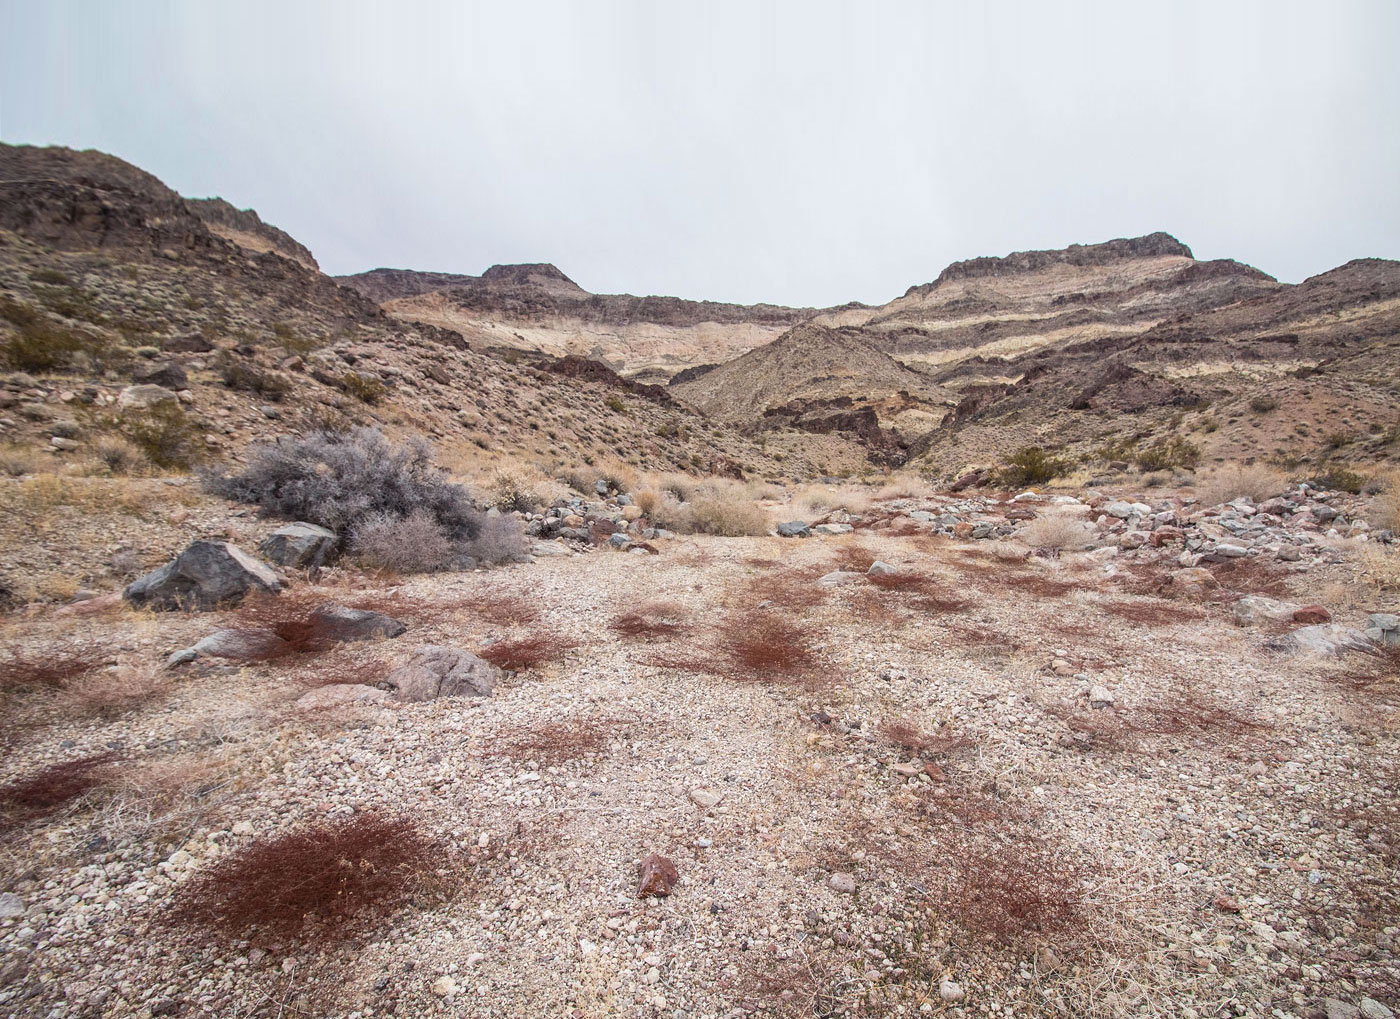 Hike Brown Peak in Death Valley National Park, California - Stav is Lost